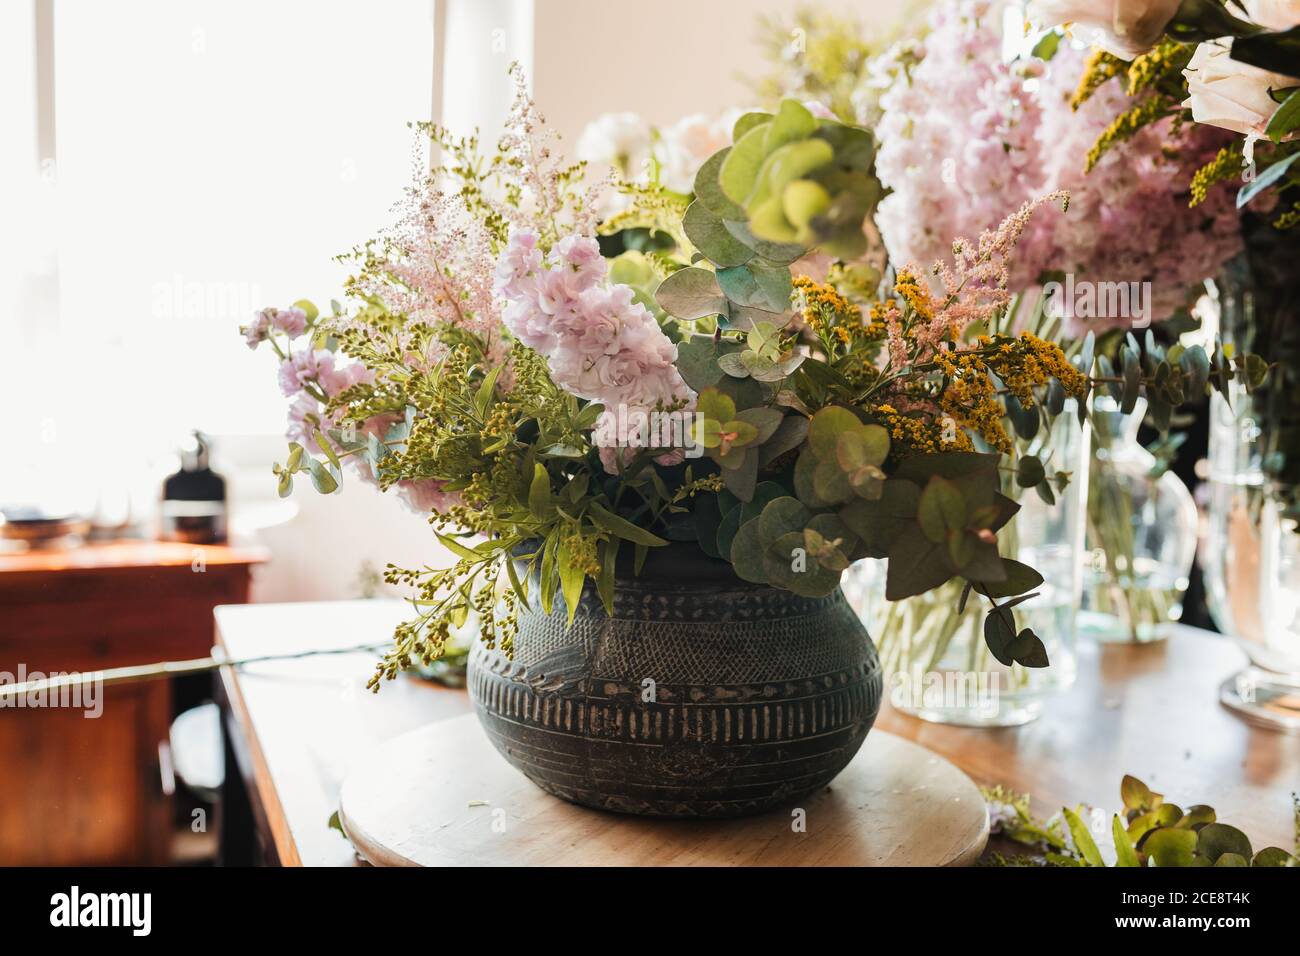 Schönes Bouquet mit verschiedenen Blumen einschließlich craspedia Blumen mit grün Eukalyptuszweige in dekorativen Keramiktopf auf dem Tisch angeordnet Im kreativen Floristik-Studio Stockfoto